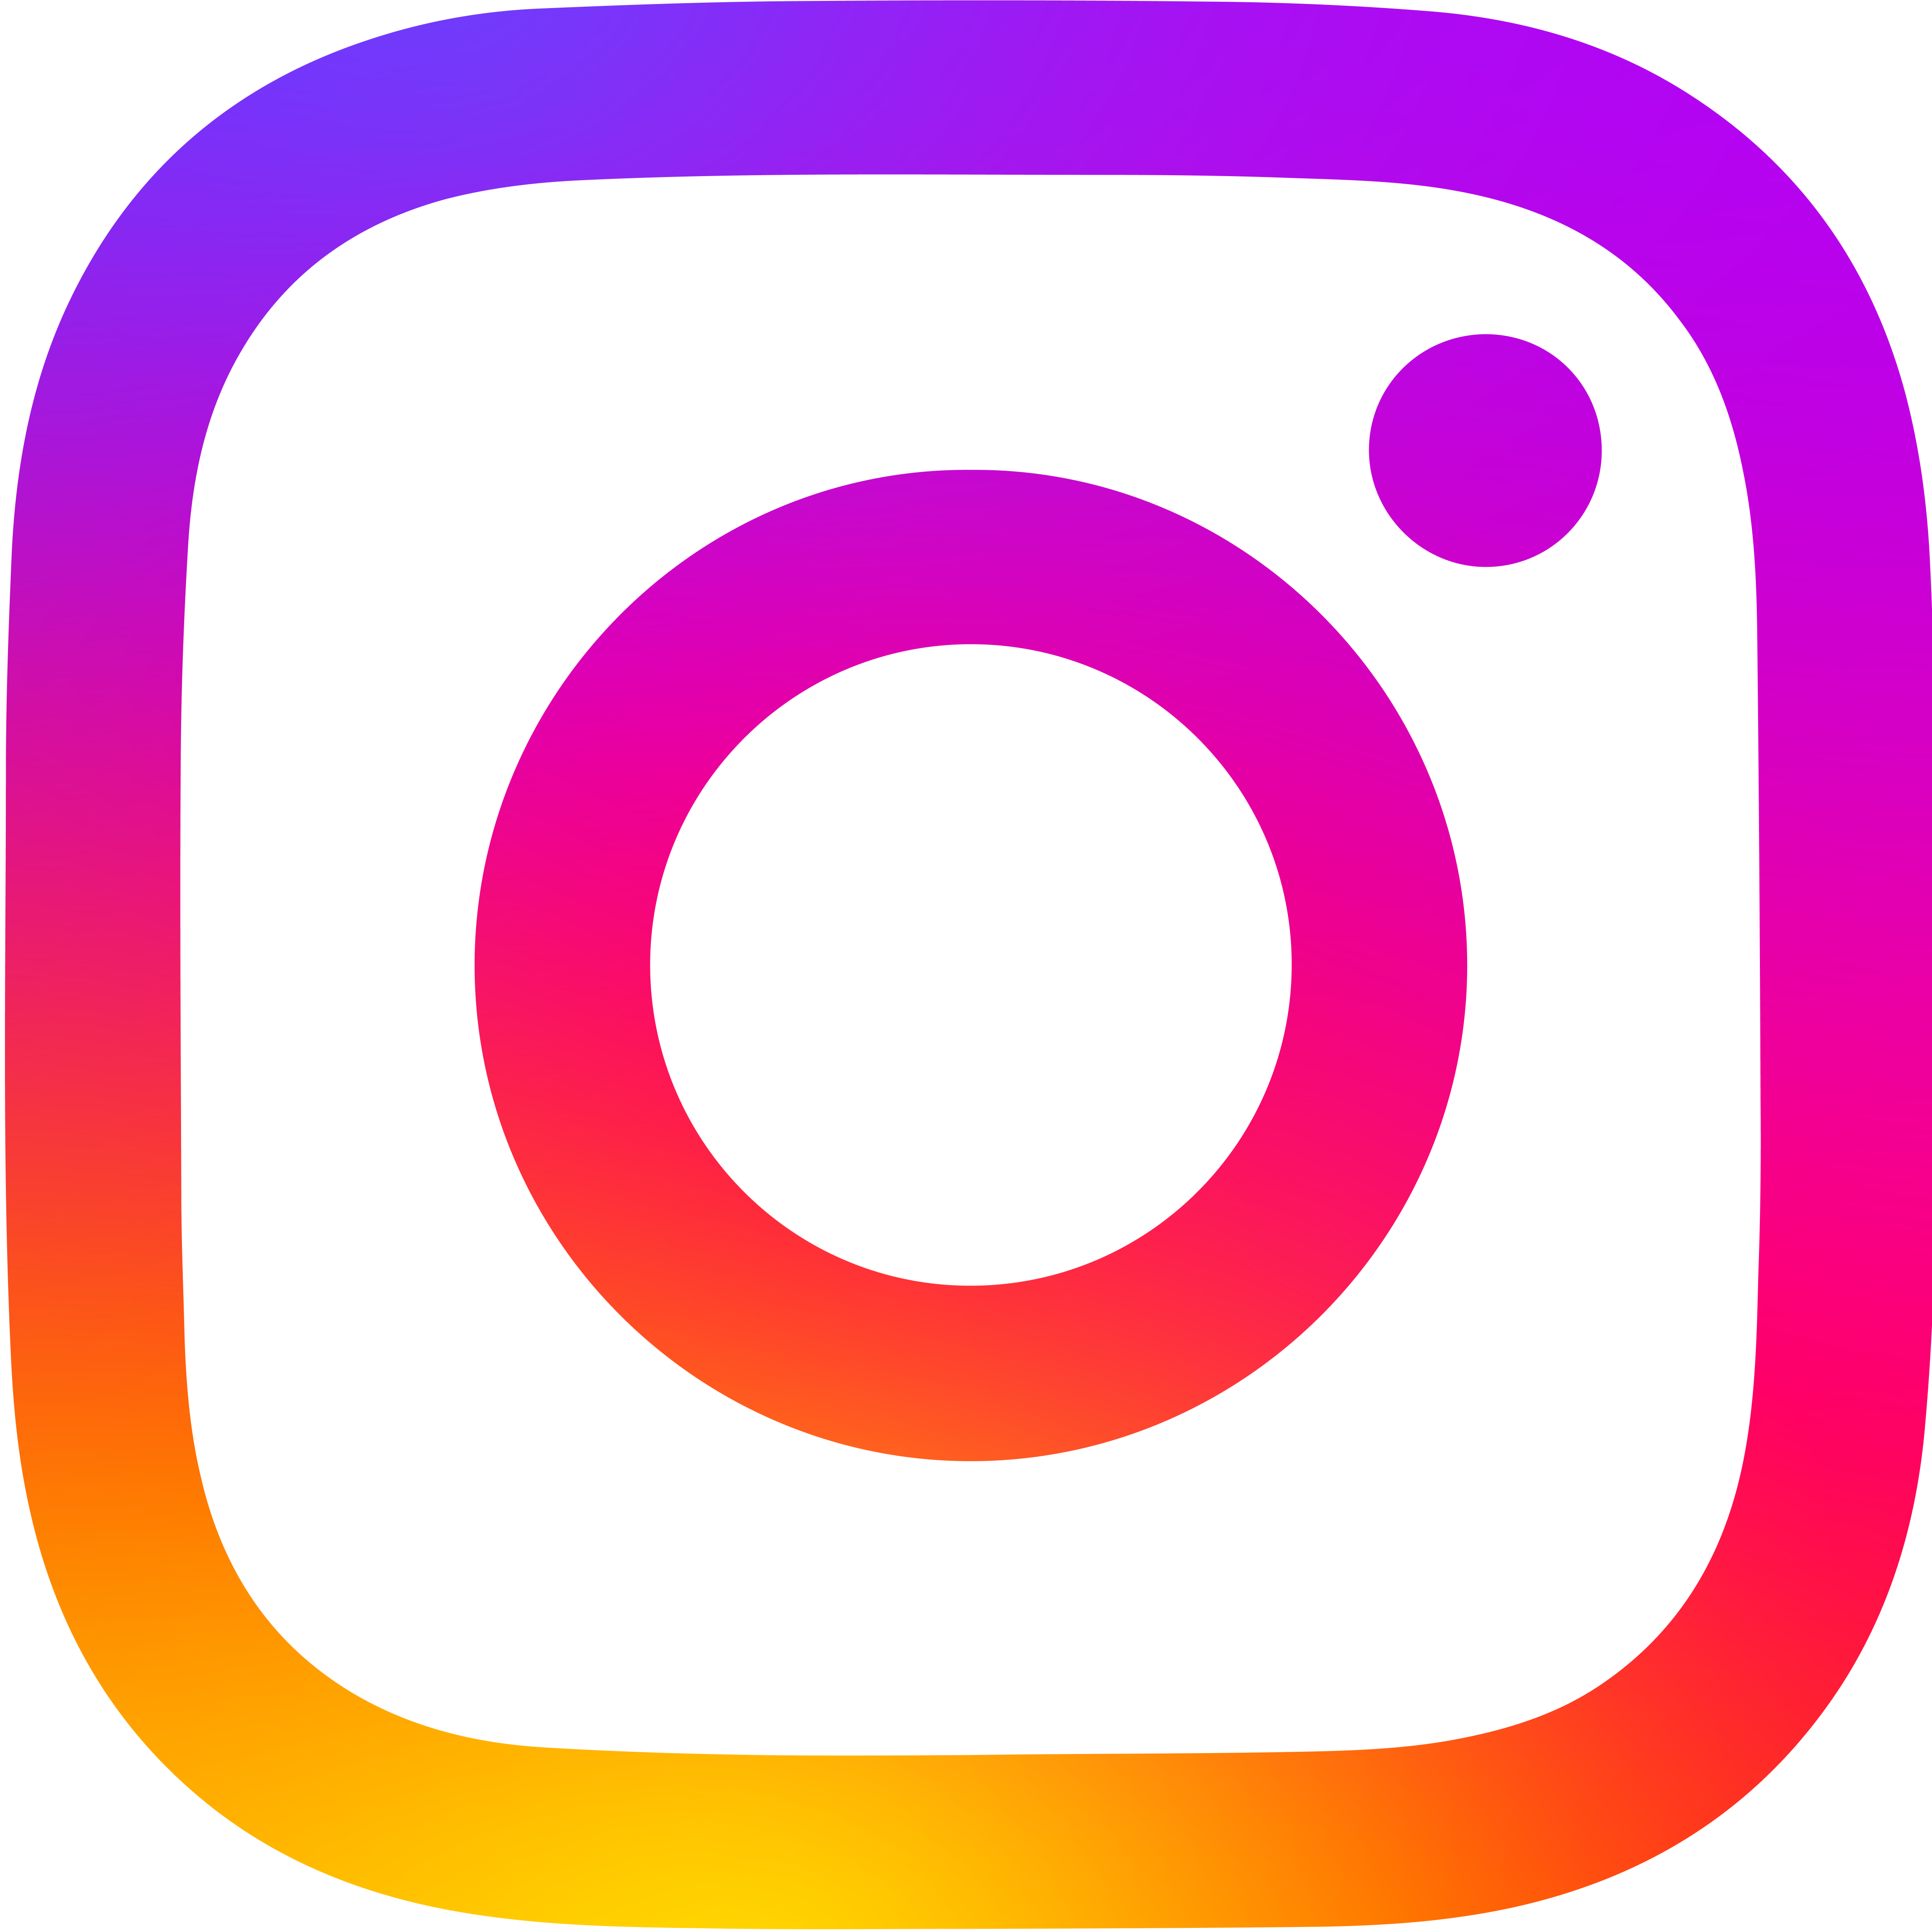 Instagramový profil projektu Regionální integrovaná doprava